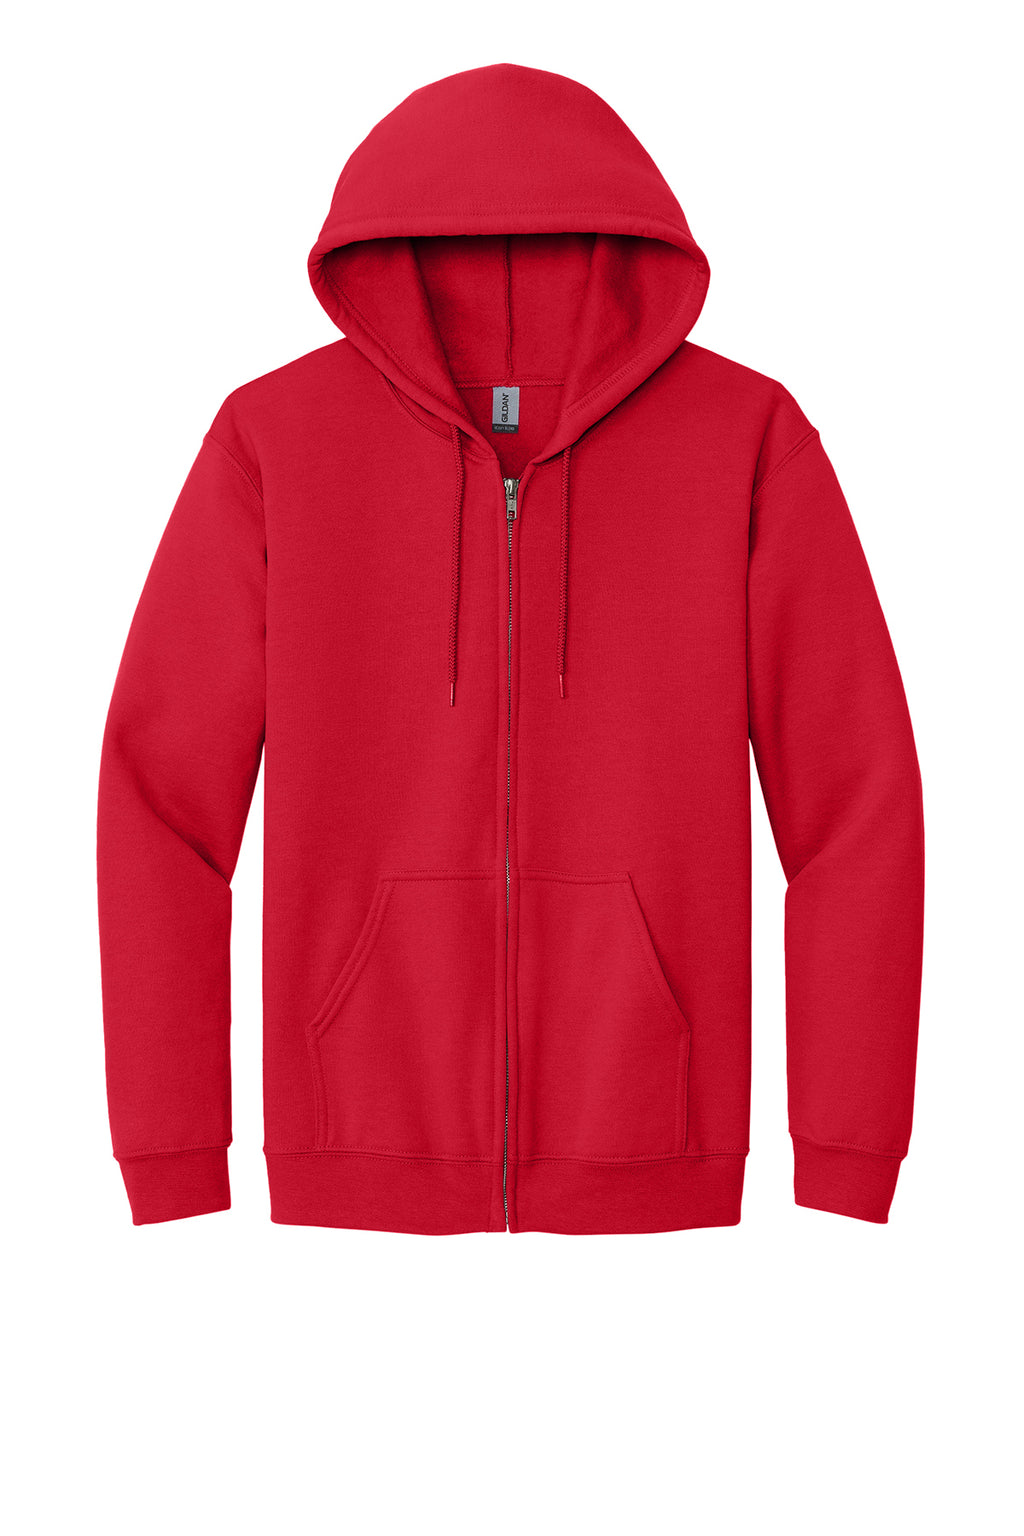 Gildan Full-Zip Hooded Sweatshirt Mens/Unisex Hoodies Red